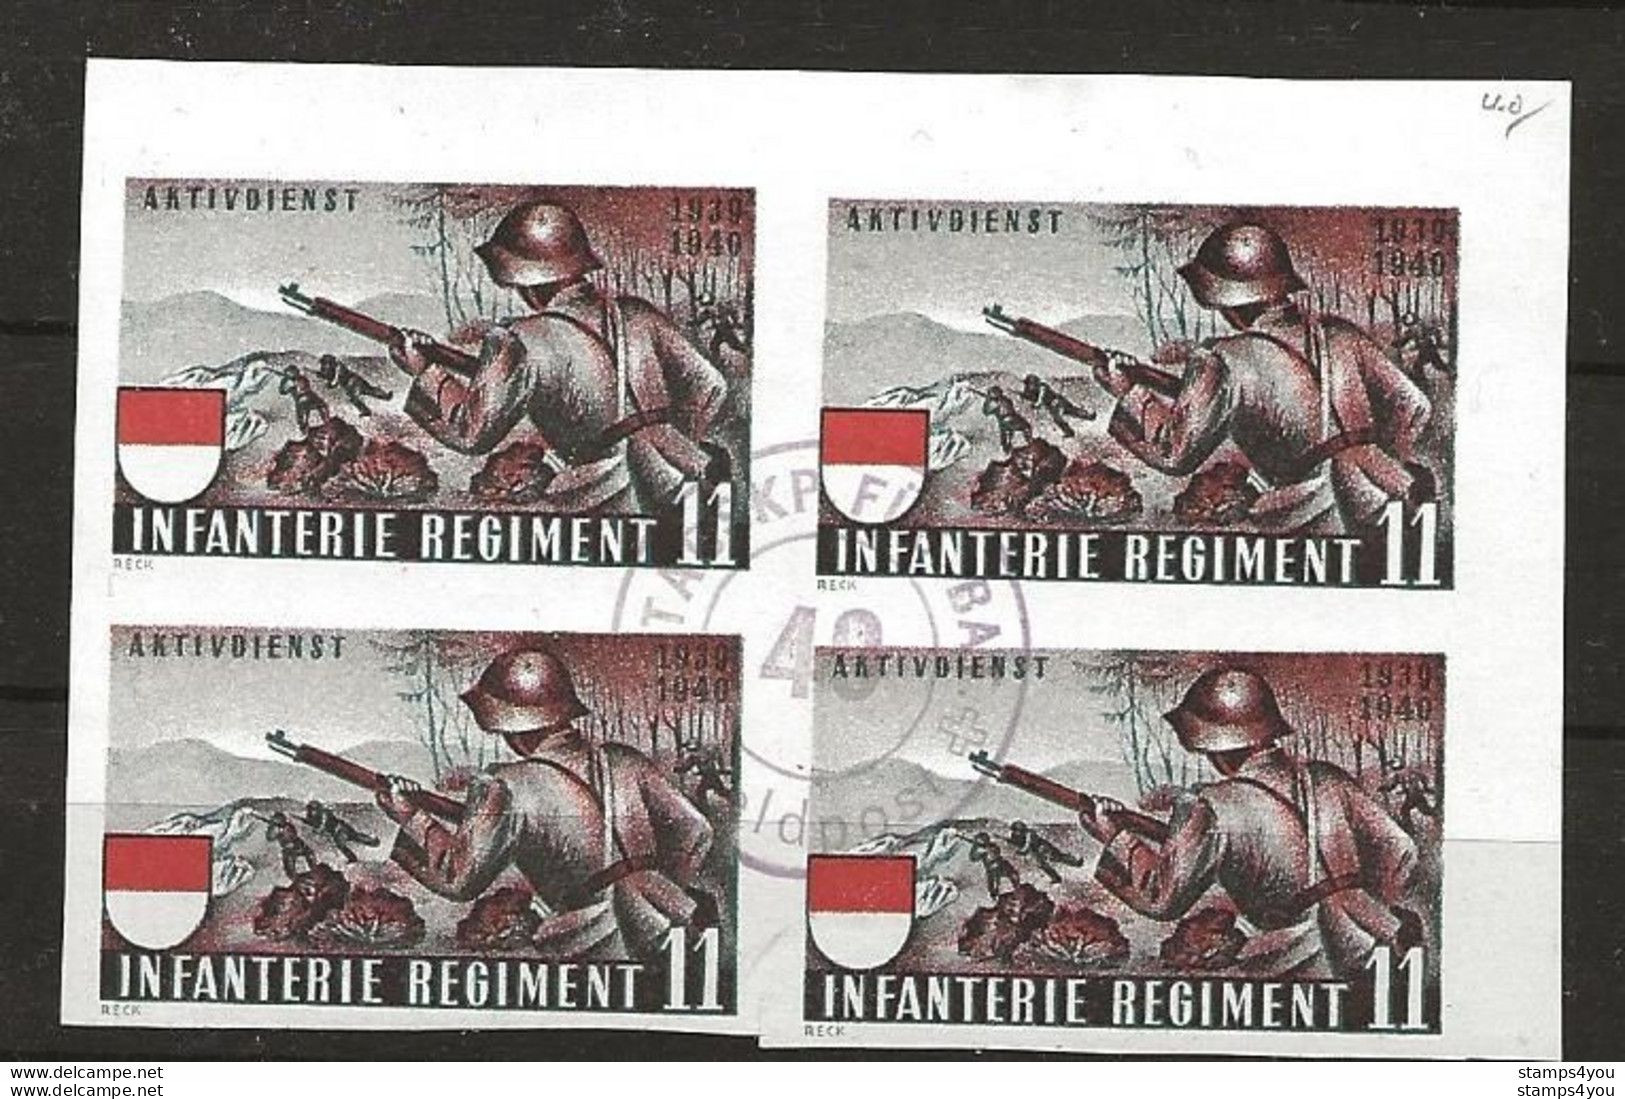 407 - 73 - Bloc Non-dentelé Oblitéré "Infanterie Regiment 11" Cachet Feldpost - Vignettes